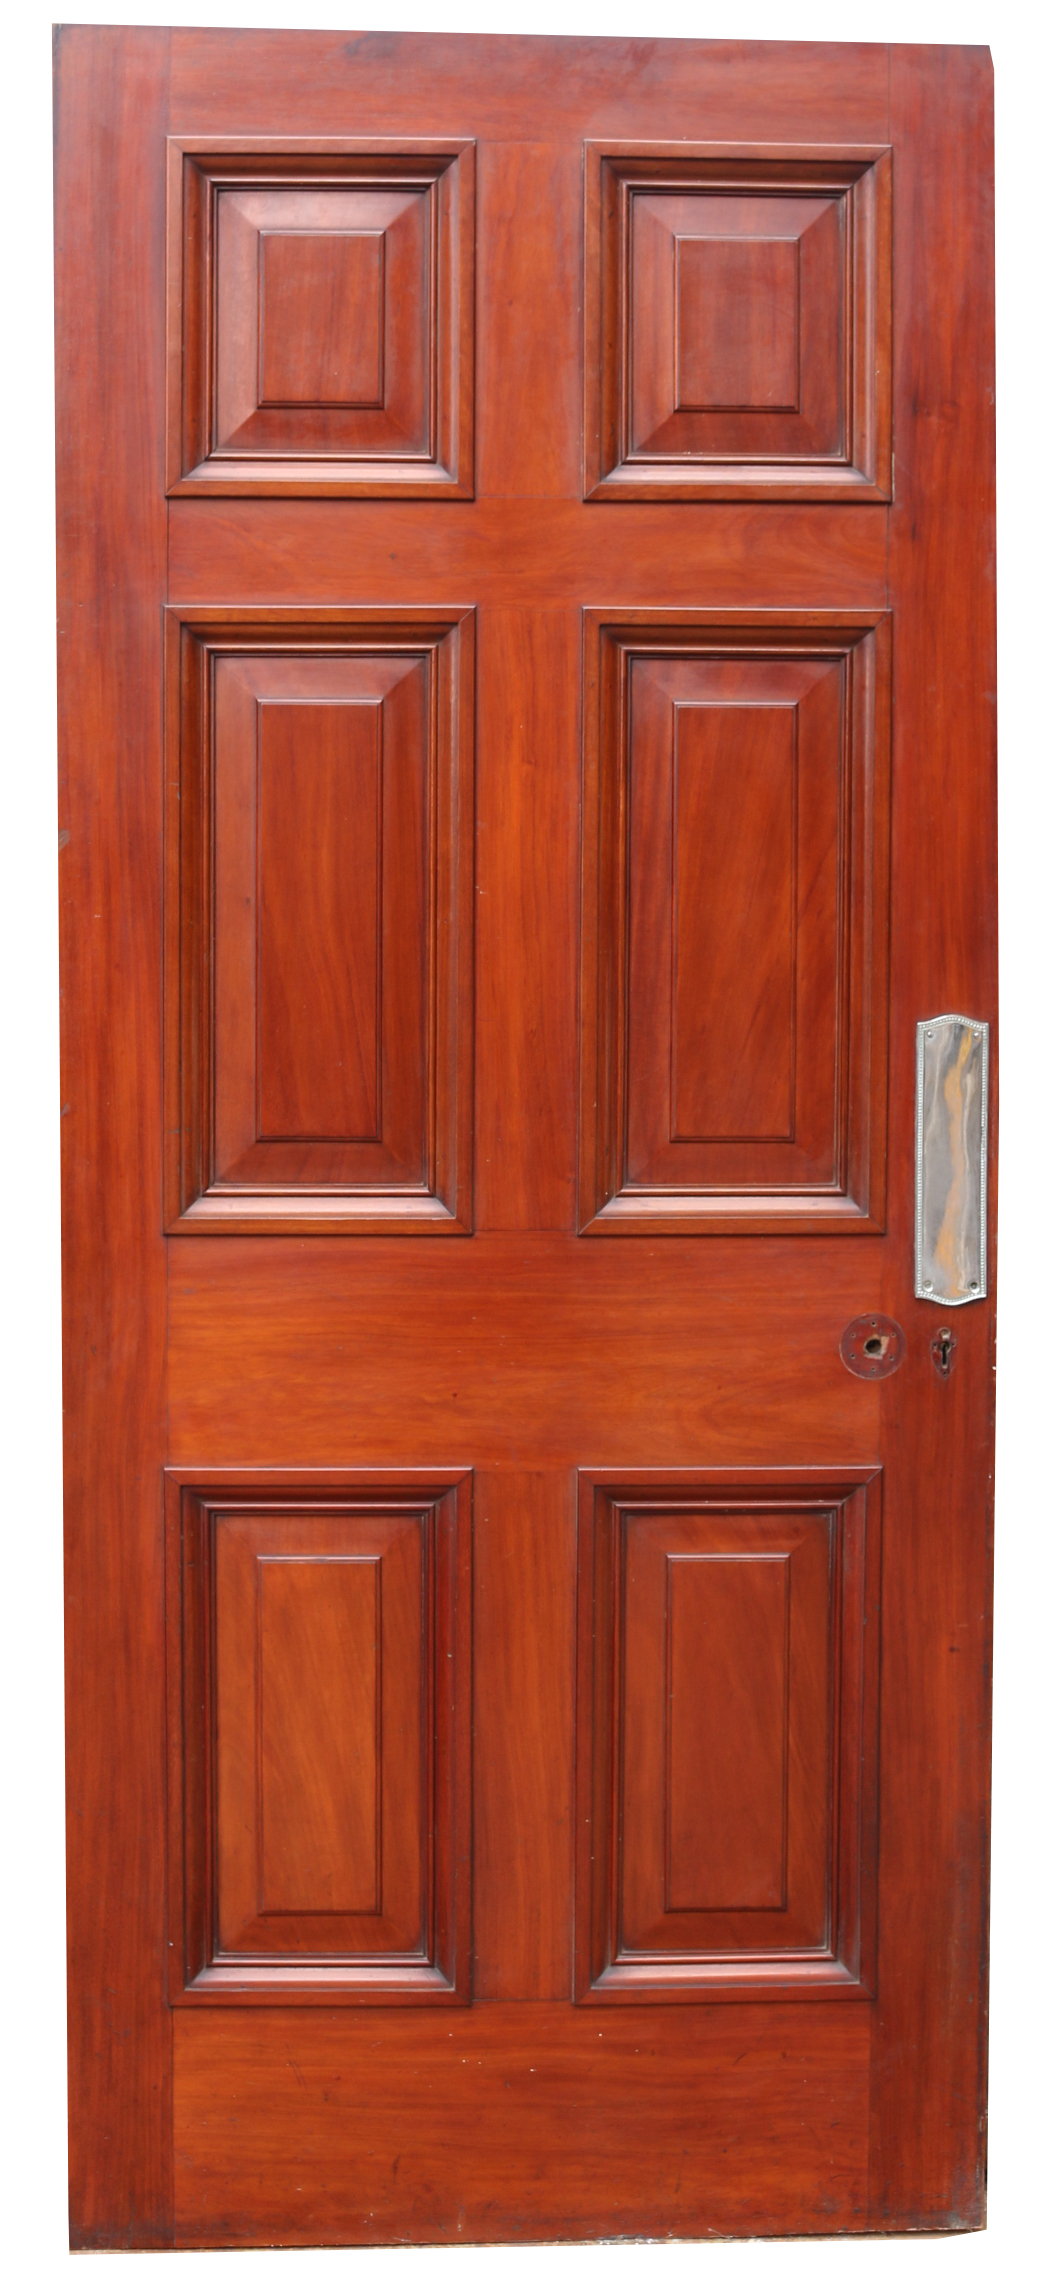 An Antique Mahogany Six Panel Door - UK Heritage